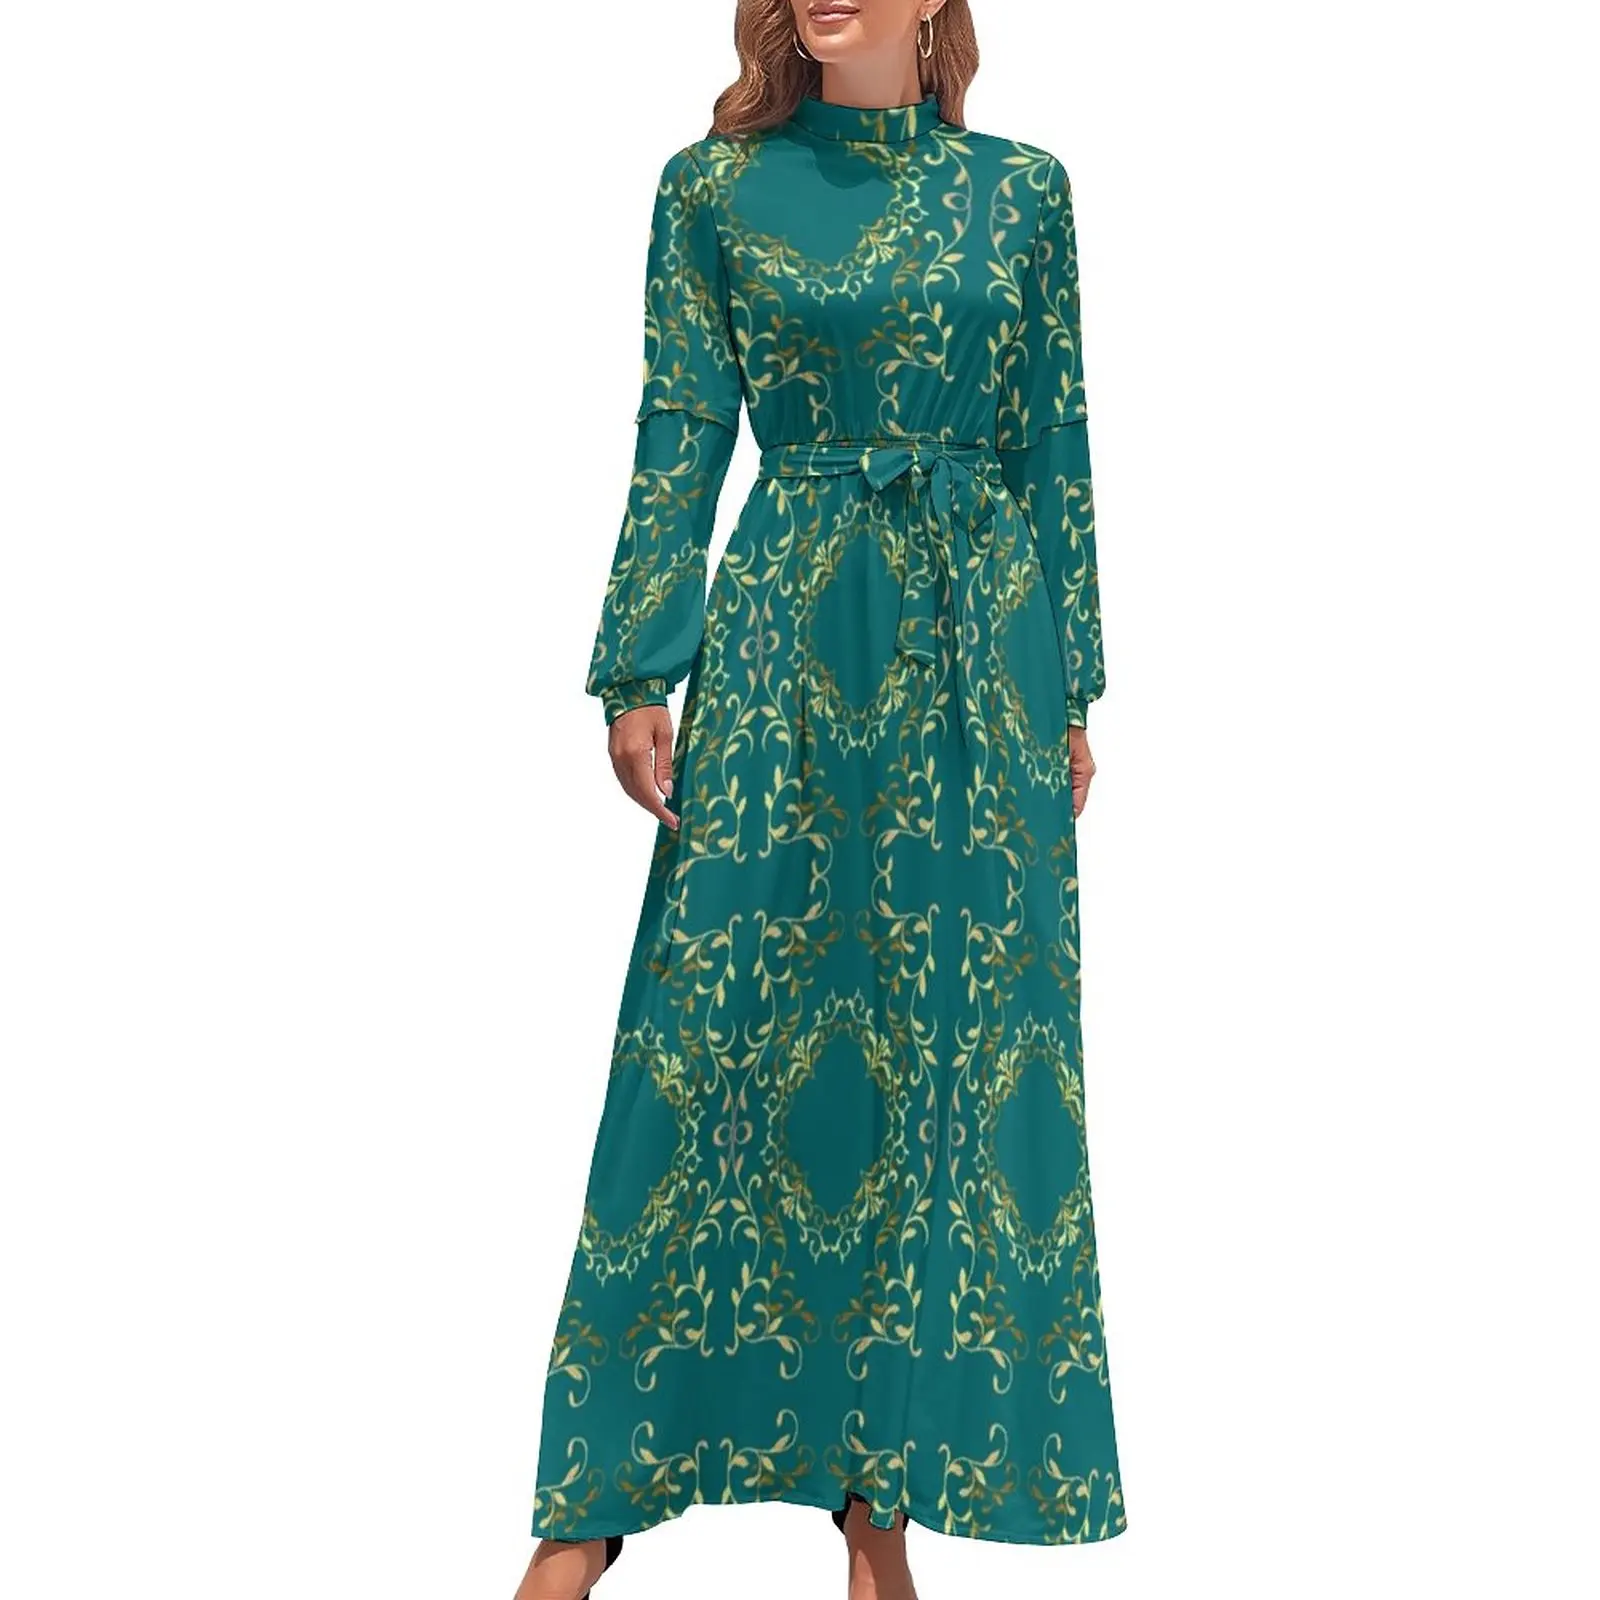 

Уличное платье в стиле барокко, Элегантное Длинное Платье Макси в стиле ретро, с цветочным принтом, в богемном стиле, с длинным рукавом и высоким воротом